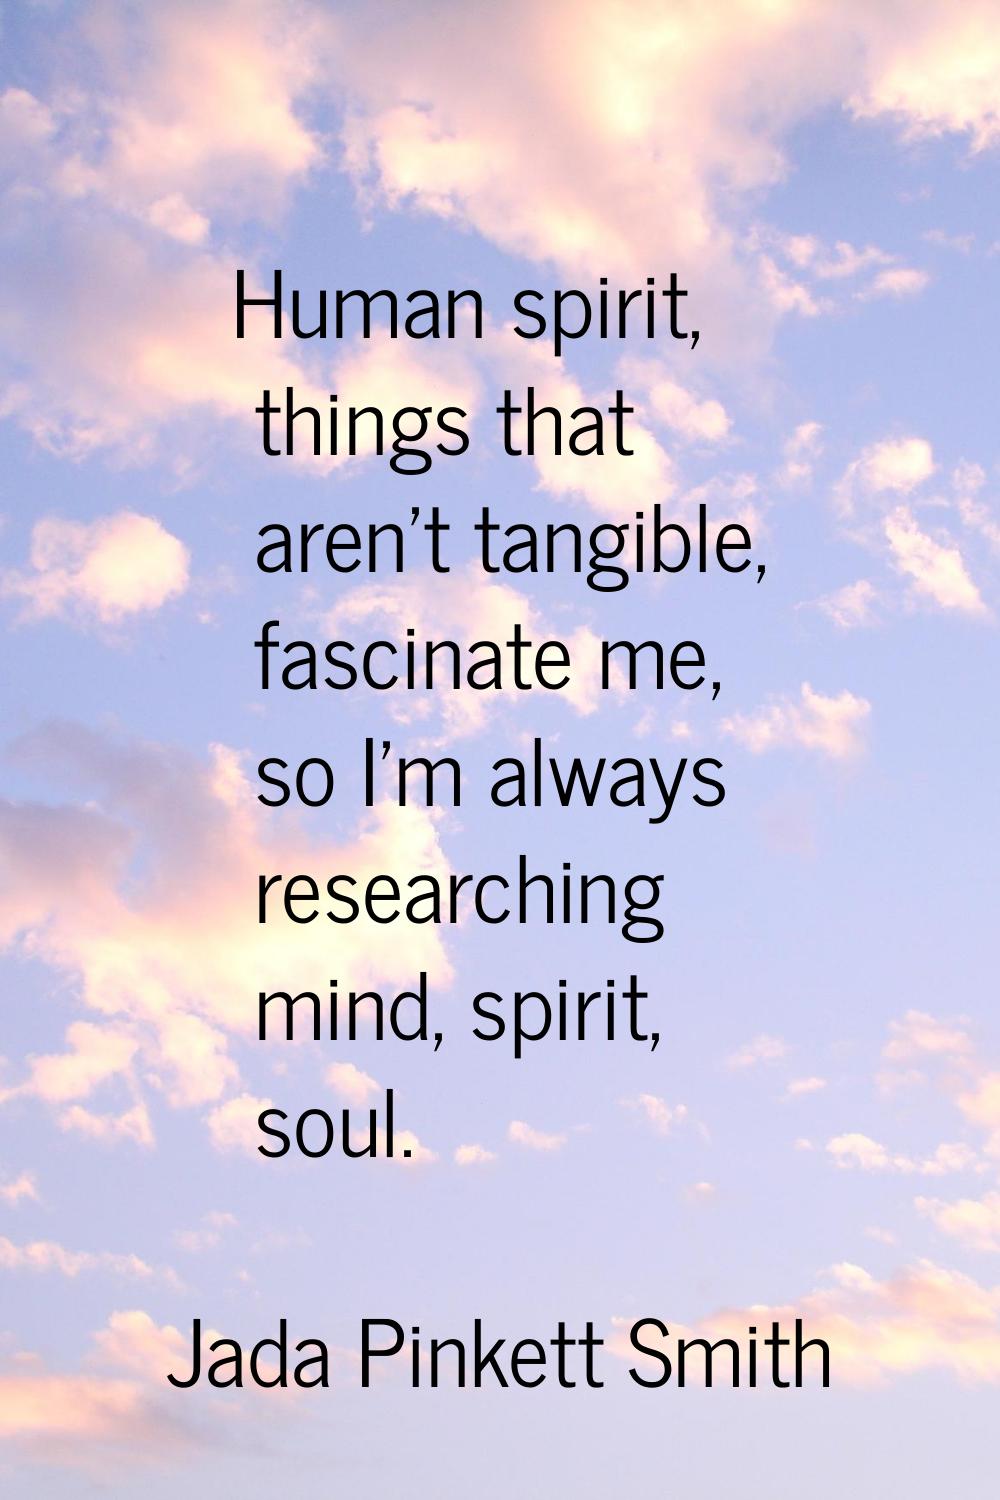 Human spirit, things that aren't tangible, fascinate me, so I'm always researching mind, spirit, so